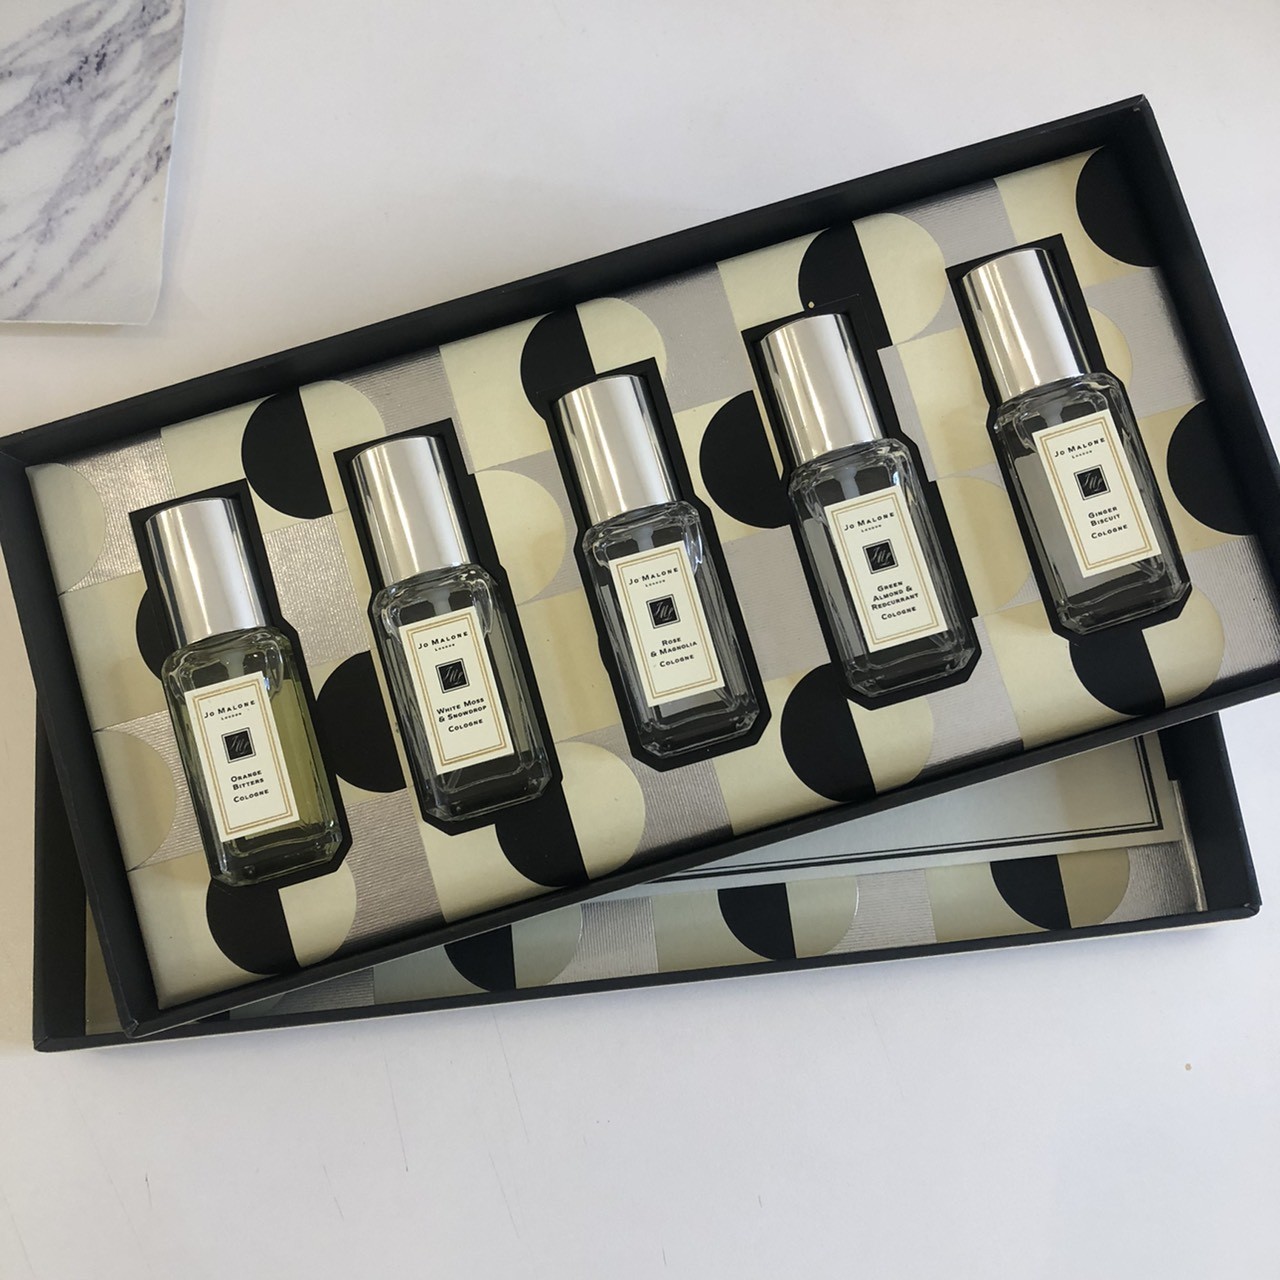 CELINE迷你香水「9瓶一次打包」 LV出23萬元縮小版旅行箱只為裝香水| ET